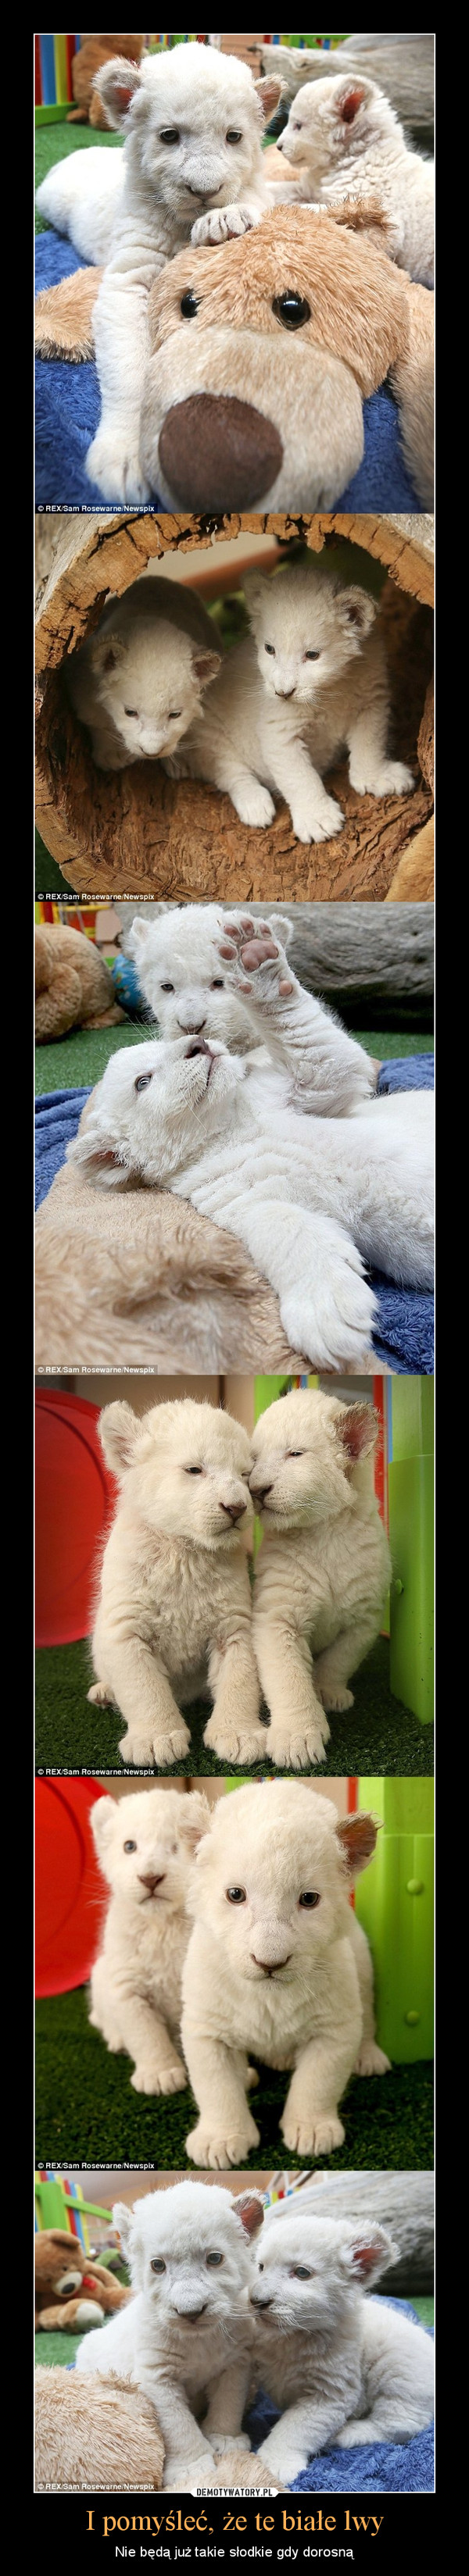 I pomyśleć, że te białe lwy – Nie będą już takie słodkie gdy dorosną 